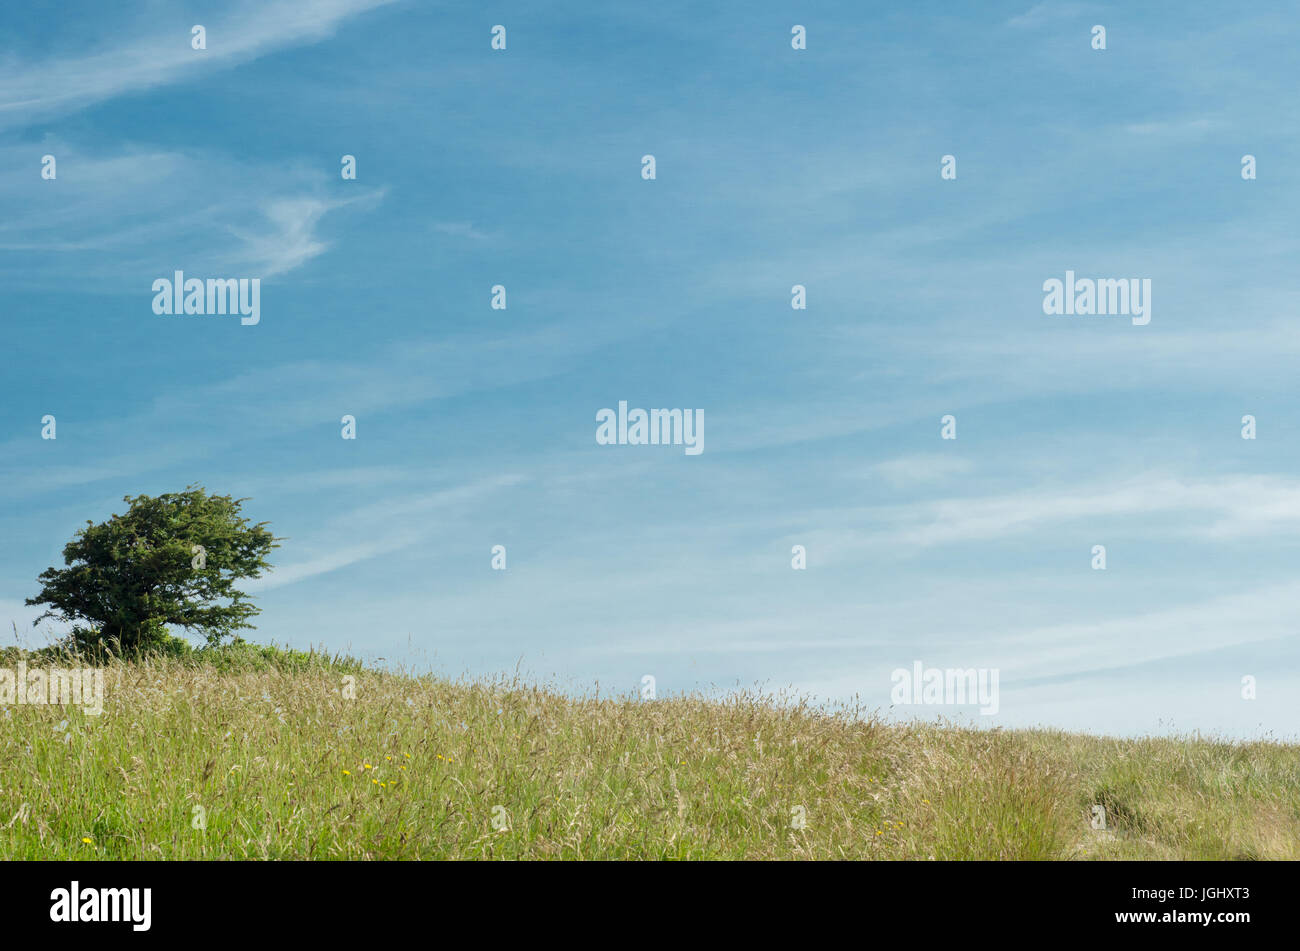 Malerische Natur Hintergrund.  Ein einzelner Baum auf einem sanft abfallenden grasbewachsenen Hügel vor einem blauen Himmel in der englischen Landschaft. Stockfoto